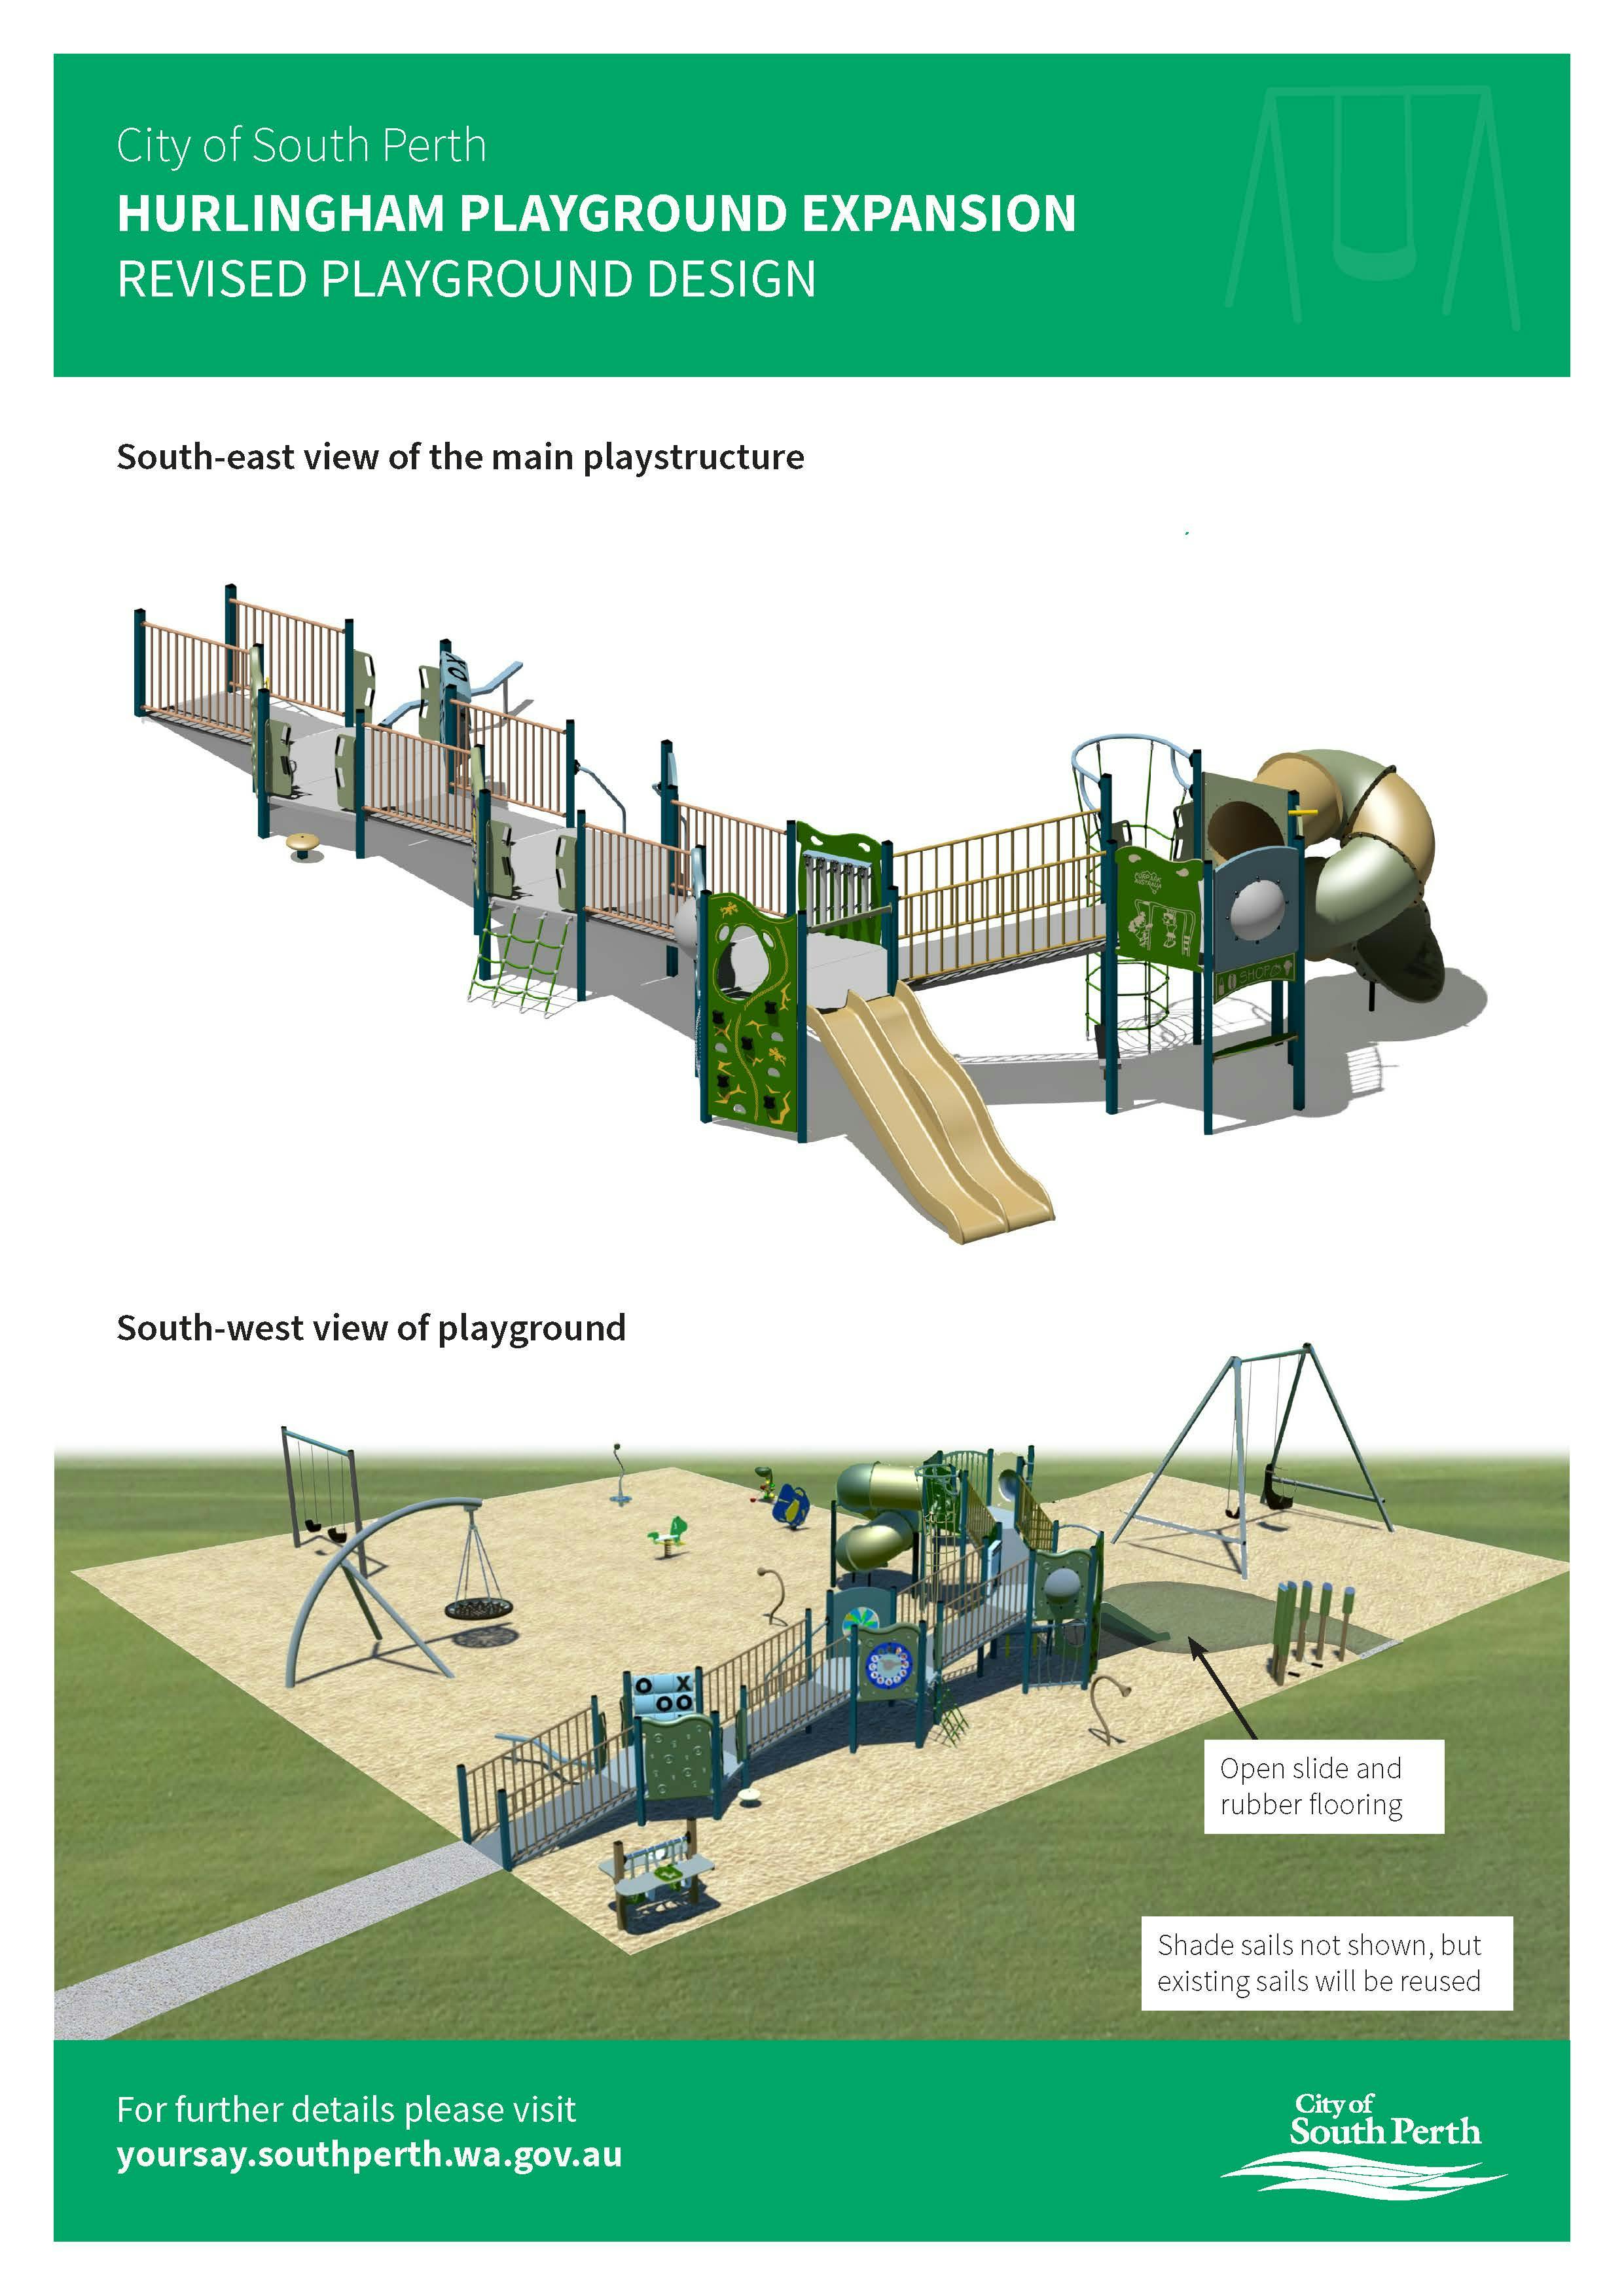 Final playground design